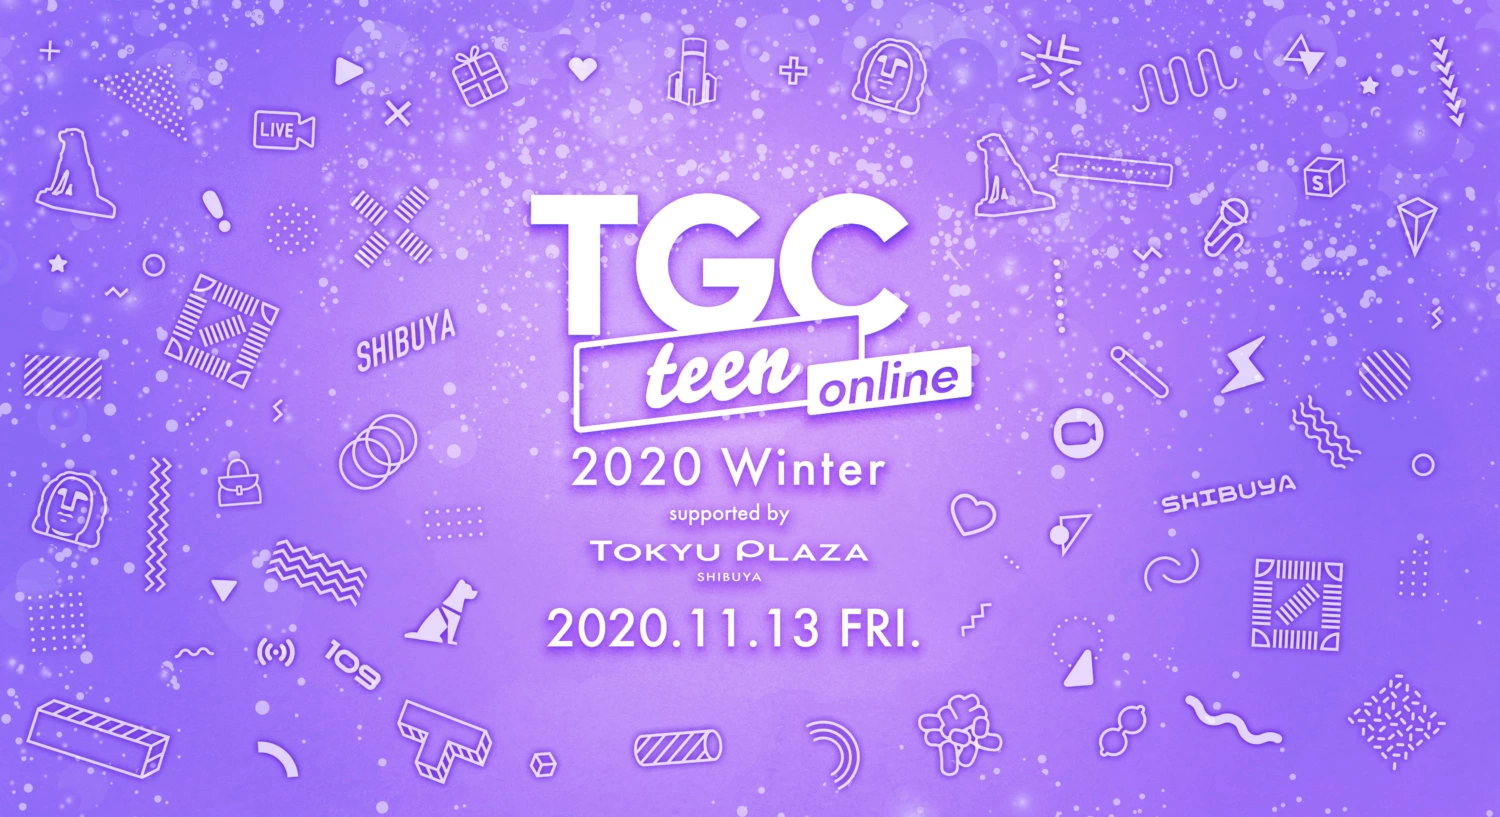 TGC teen 2020 Winter online